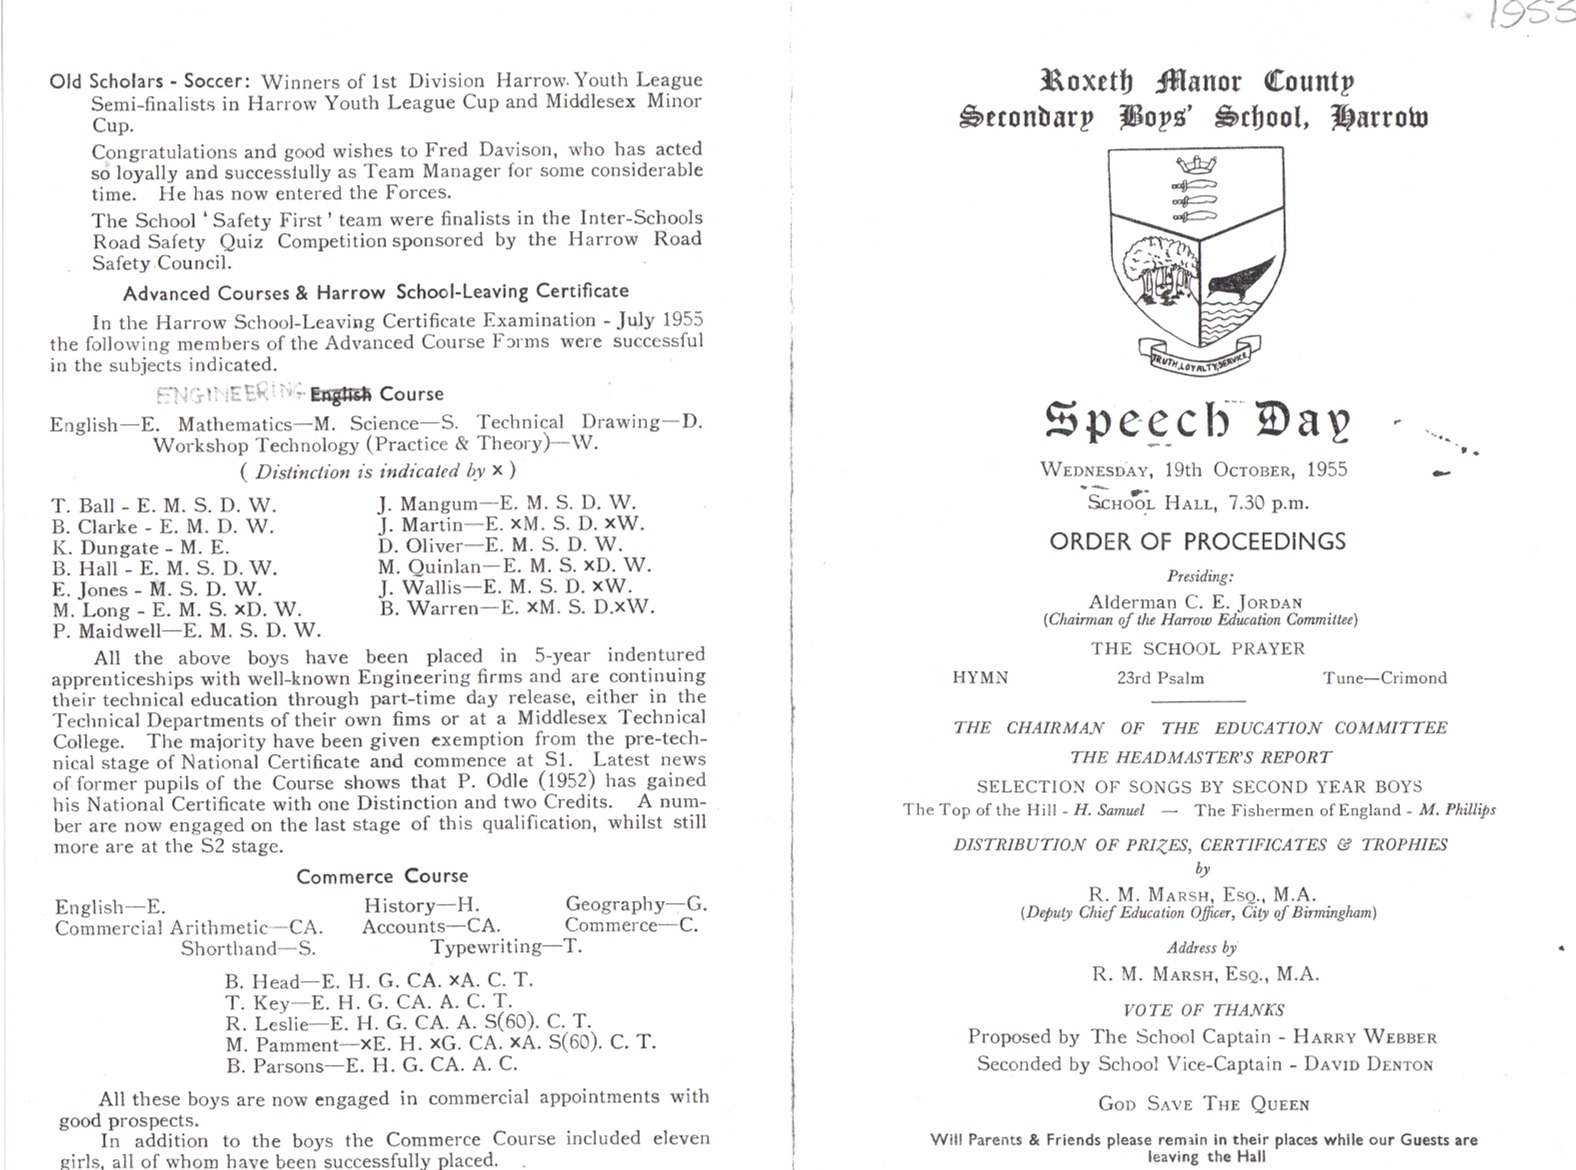 1955 speech